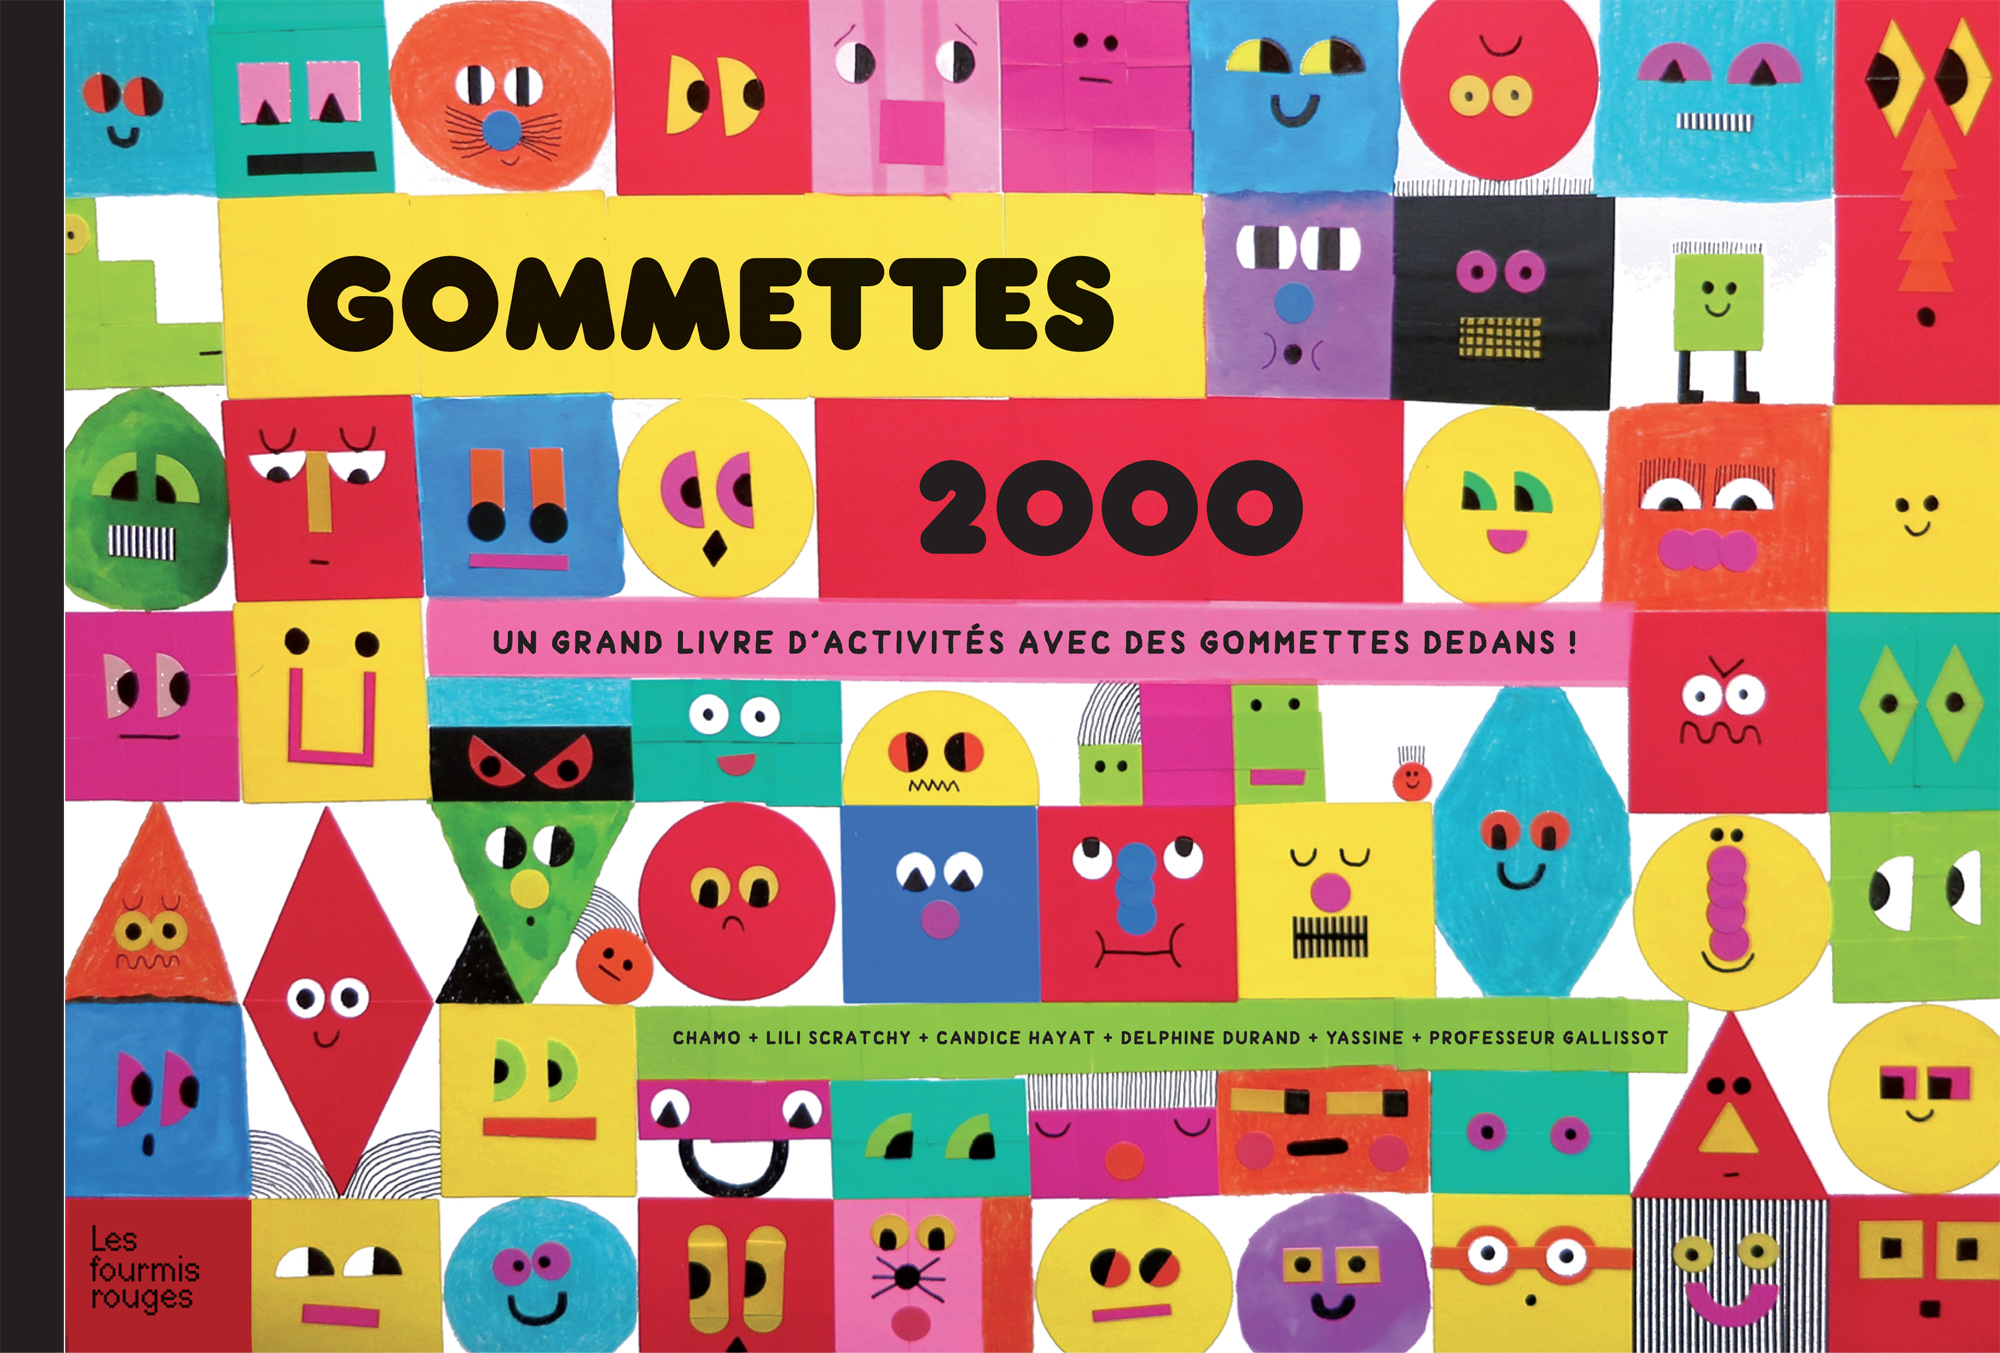 Gommettes 2000 - Editions Les Fourmis Rouges